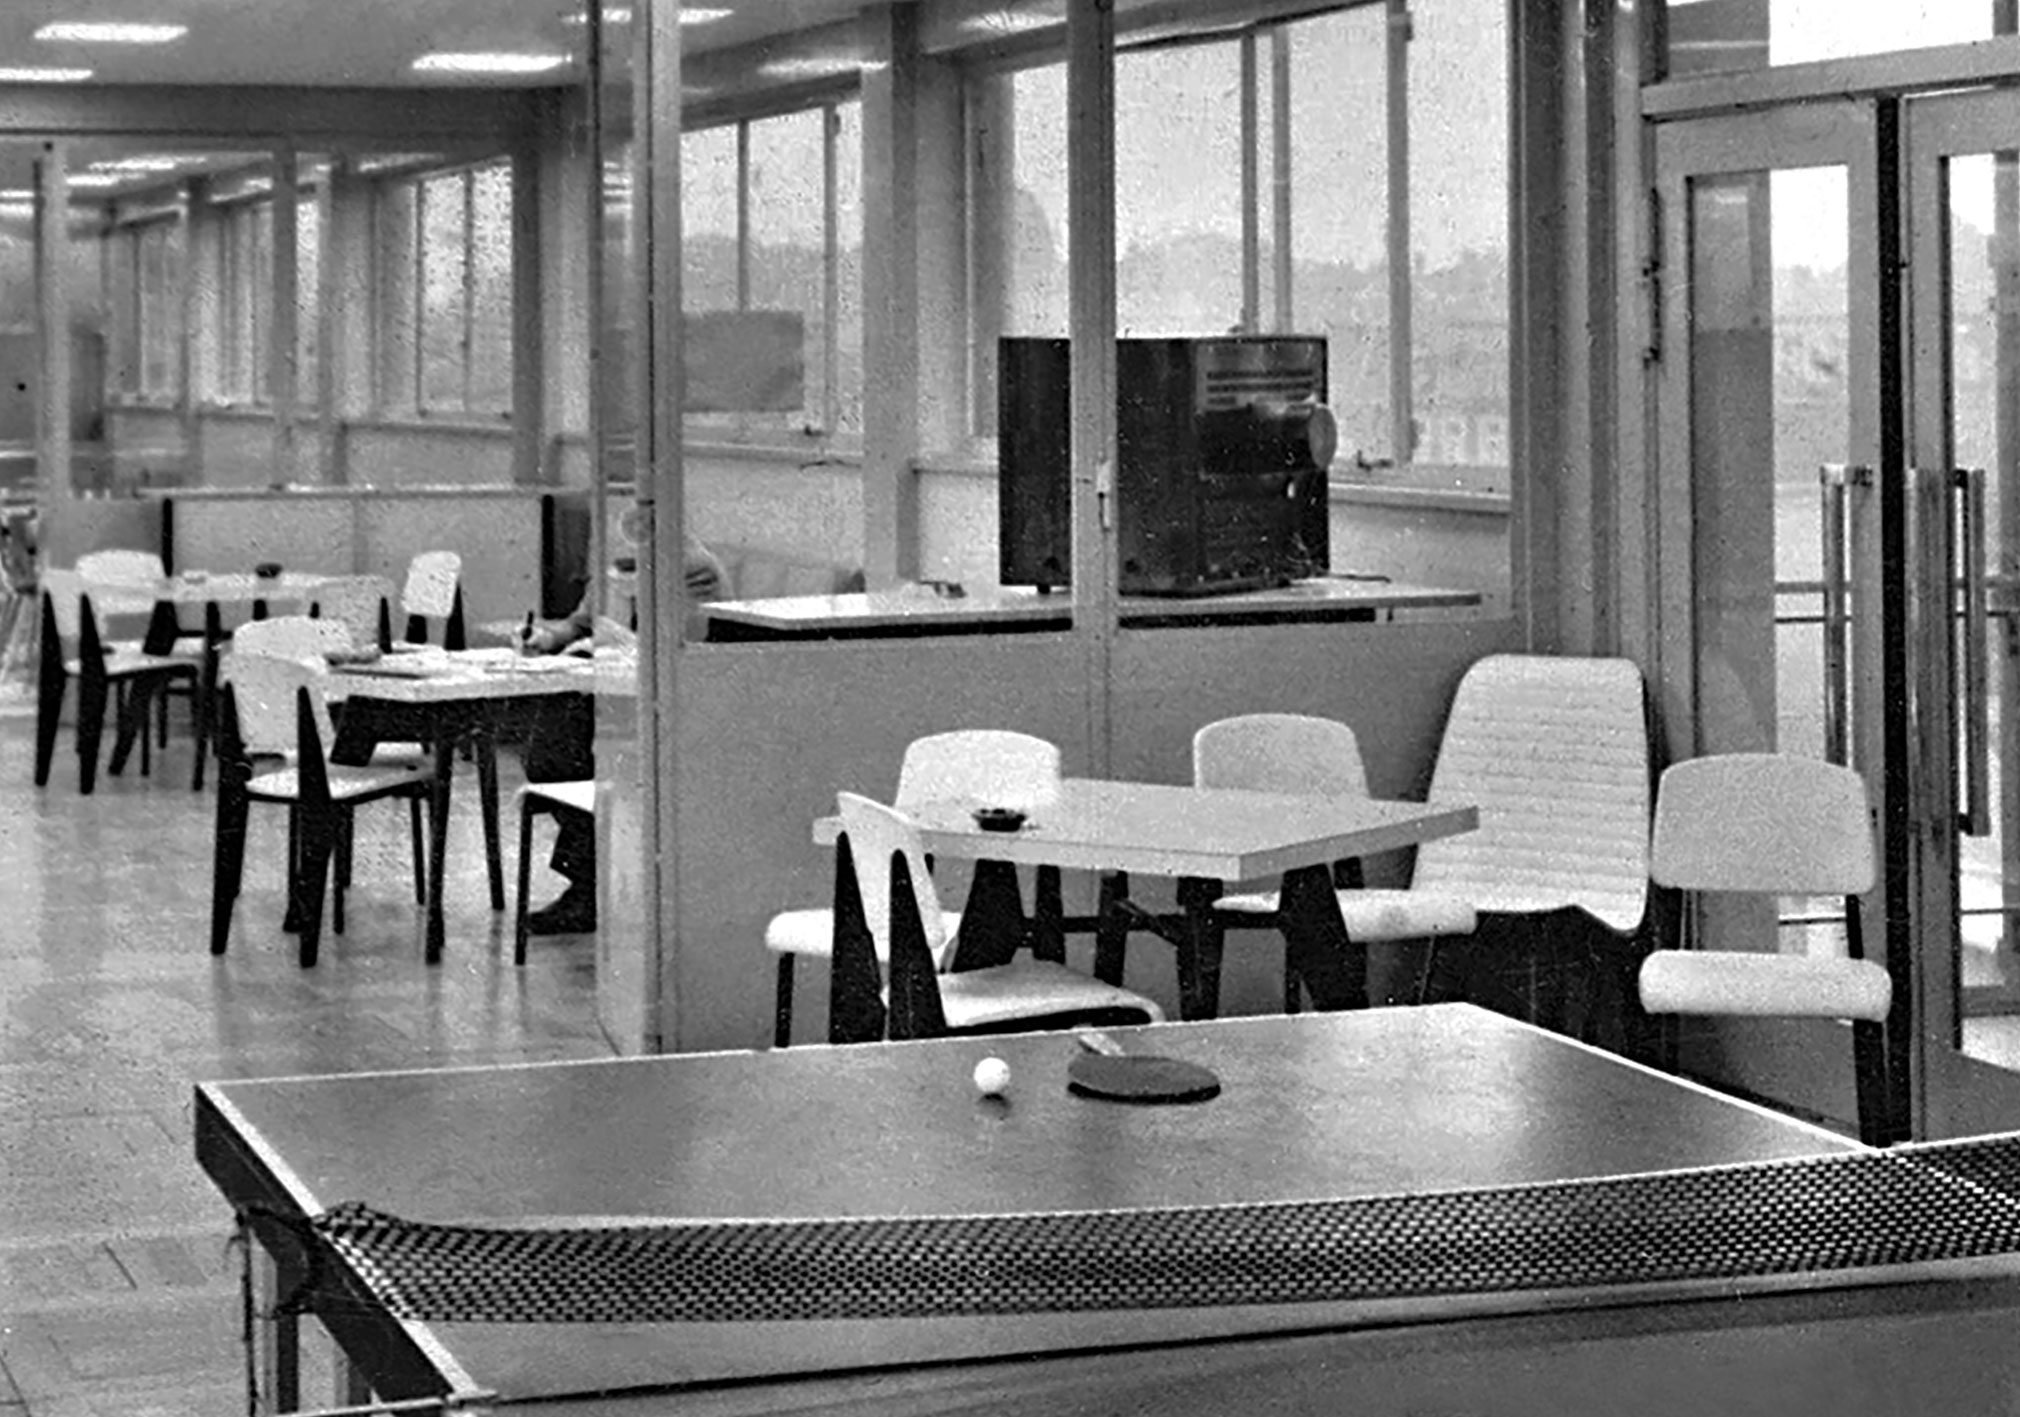 Centre de réadaptation fonctionnelle, Nancy (R. Lamoise et R. Malot, arch., 1955-1958). Réfectoire et salle de jeux équipés de guéridons Cafétéria n° 511, chaises n° 305 et fauteuils légers n° 356, c. 1958.